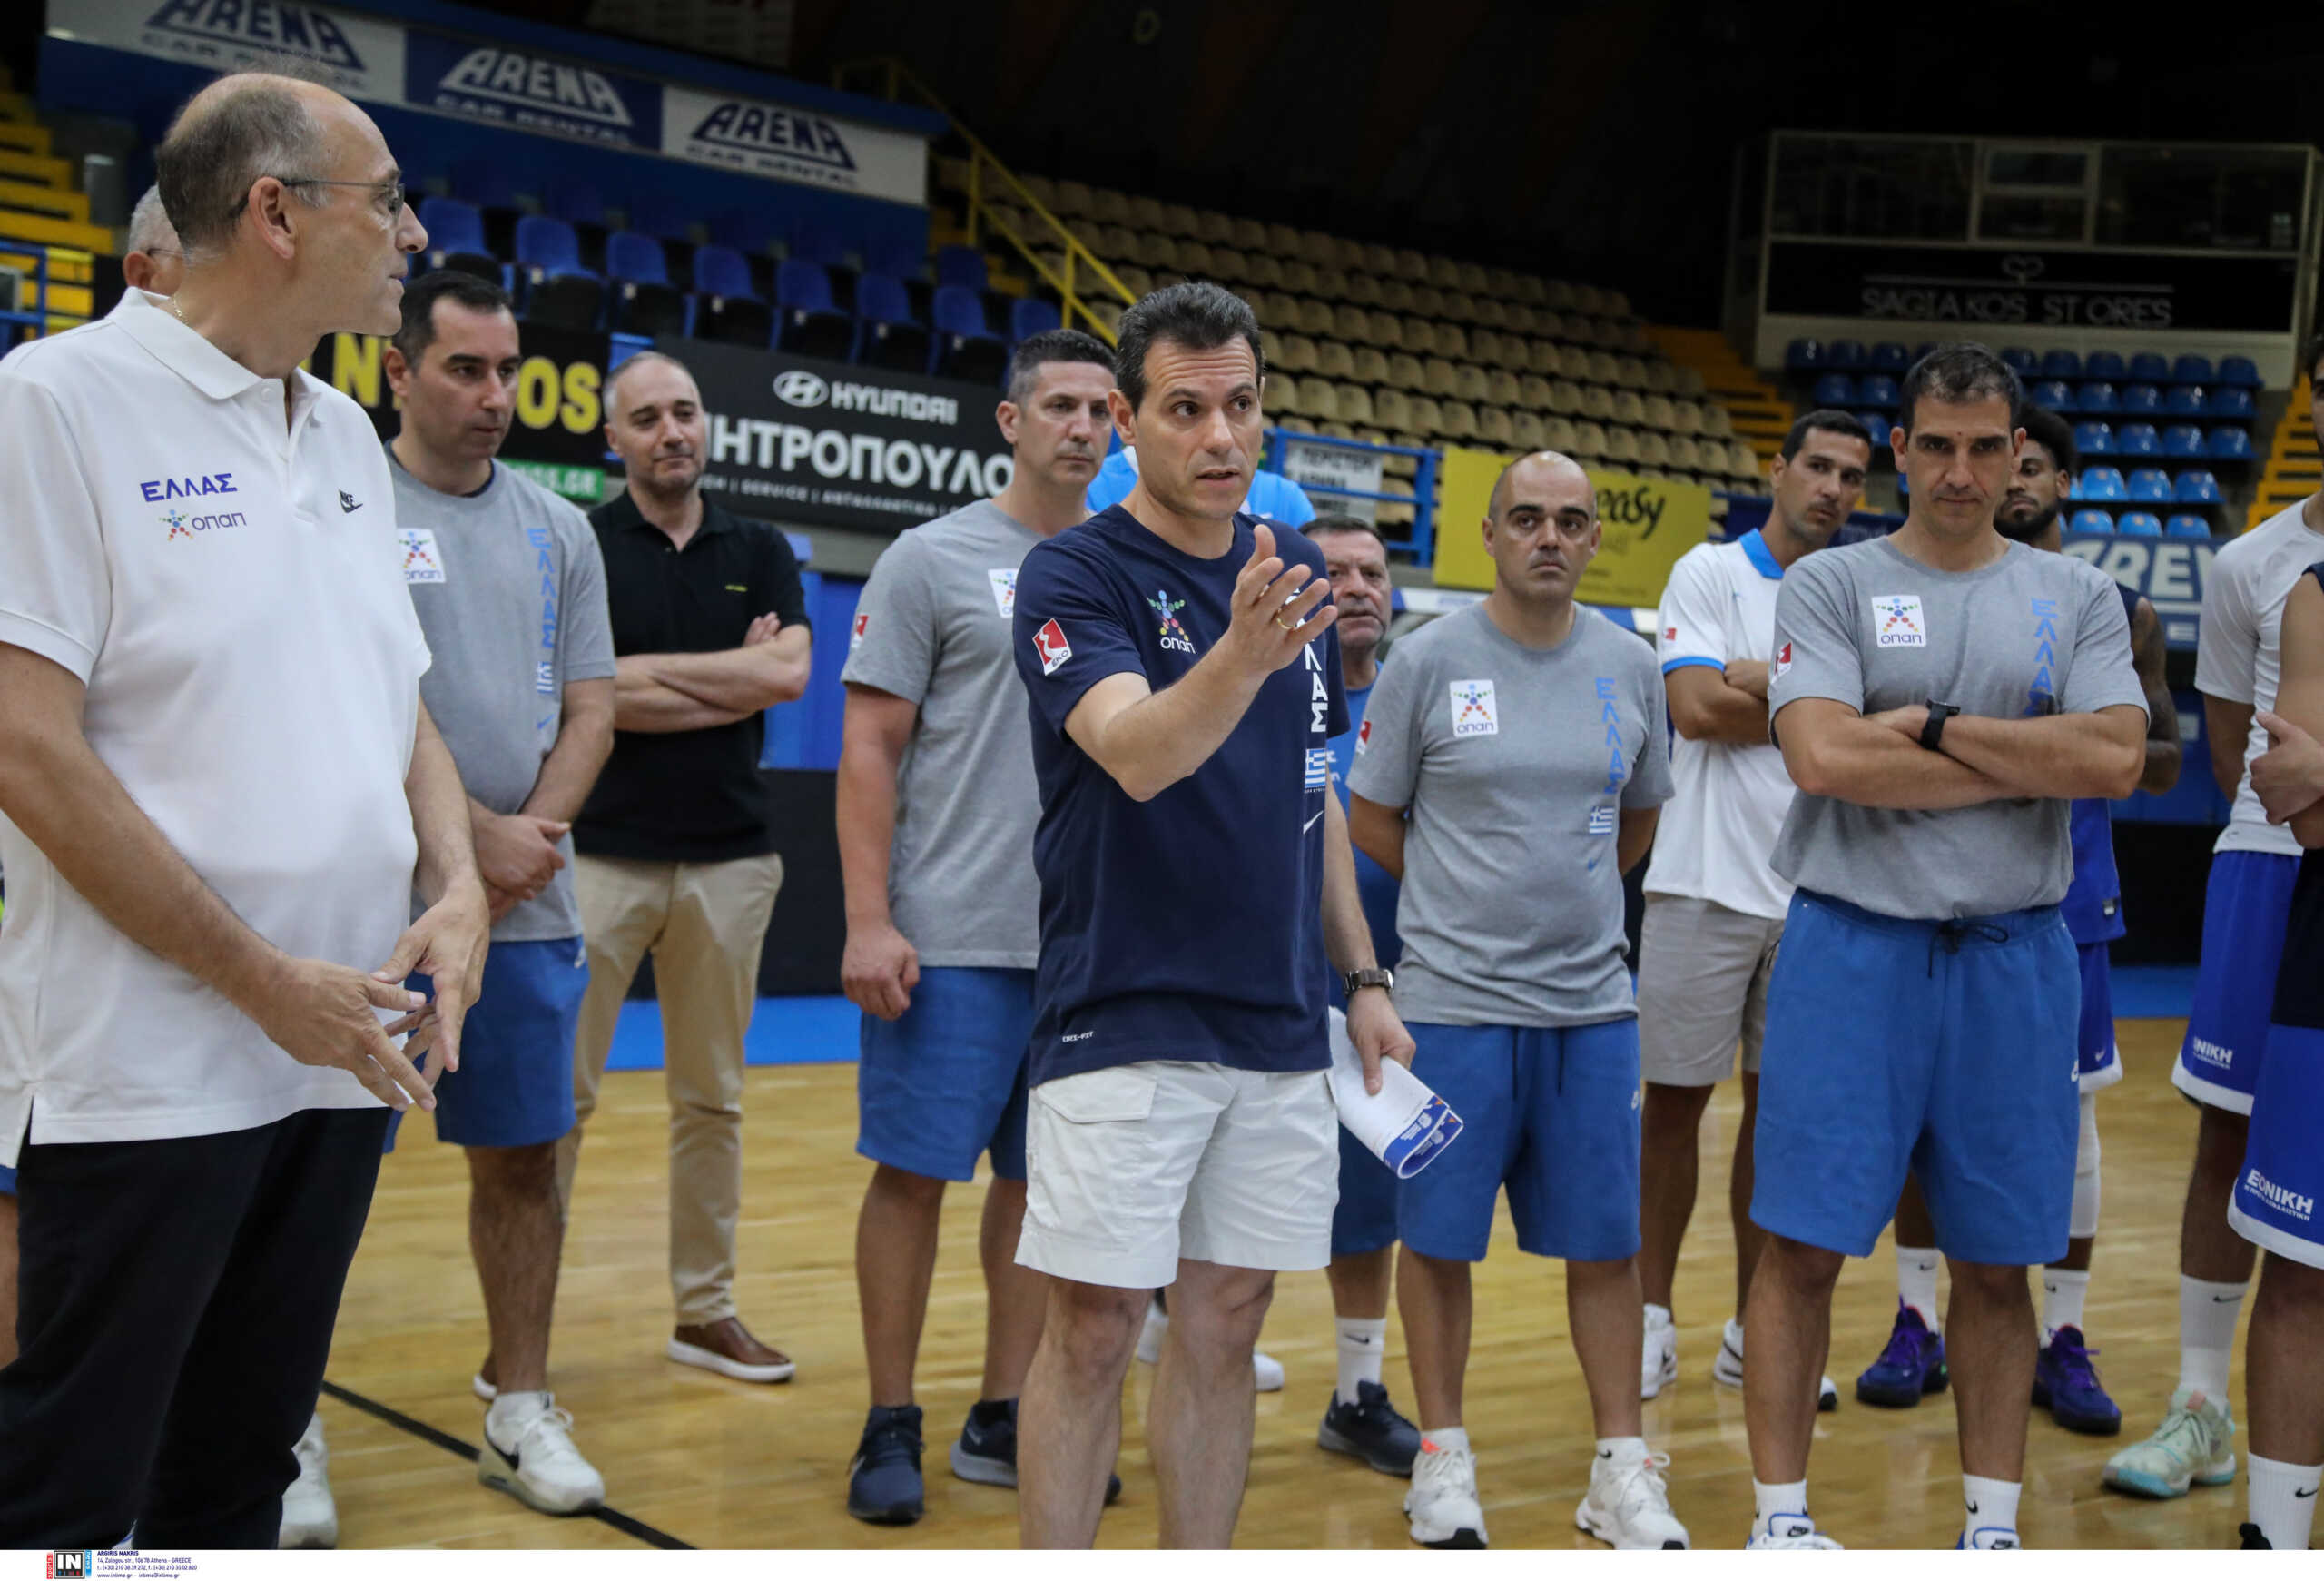 Εθνική Ελλάδας μπάσκετ: Κόπηκαν Μωραΐτης και και Κουζέλογλου